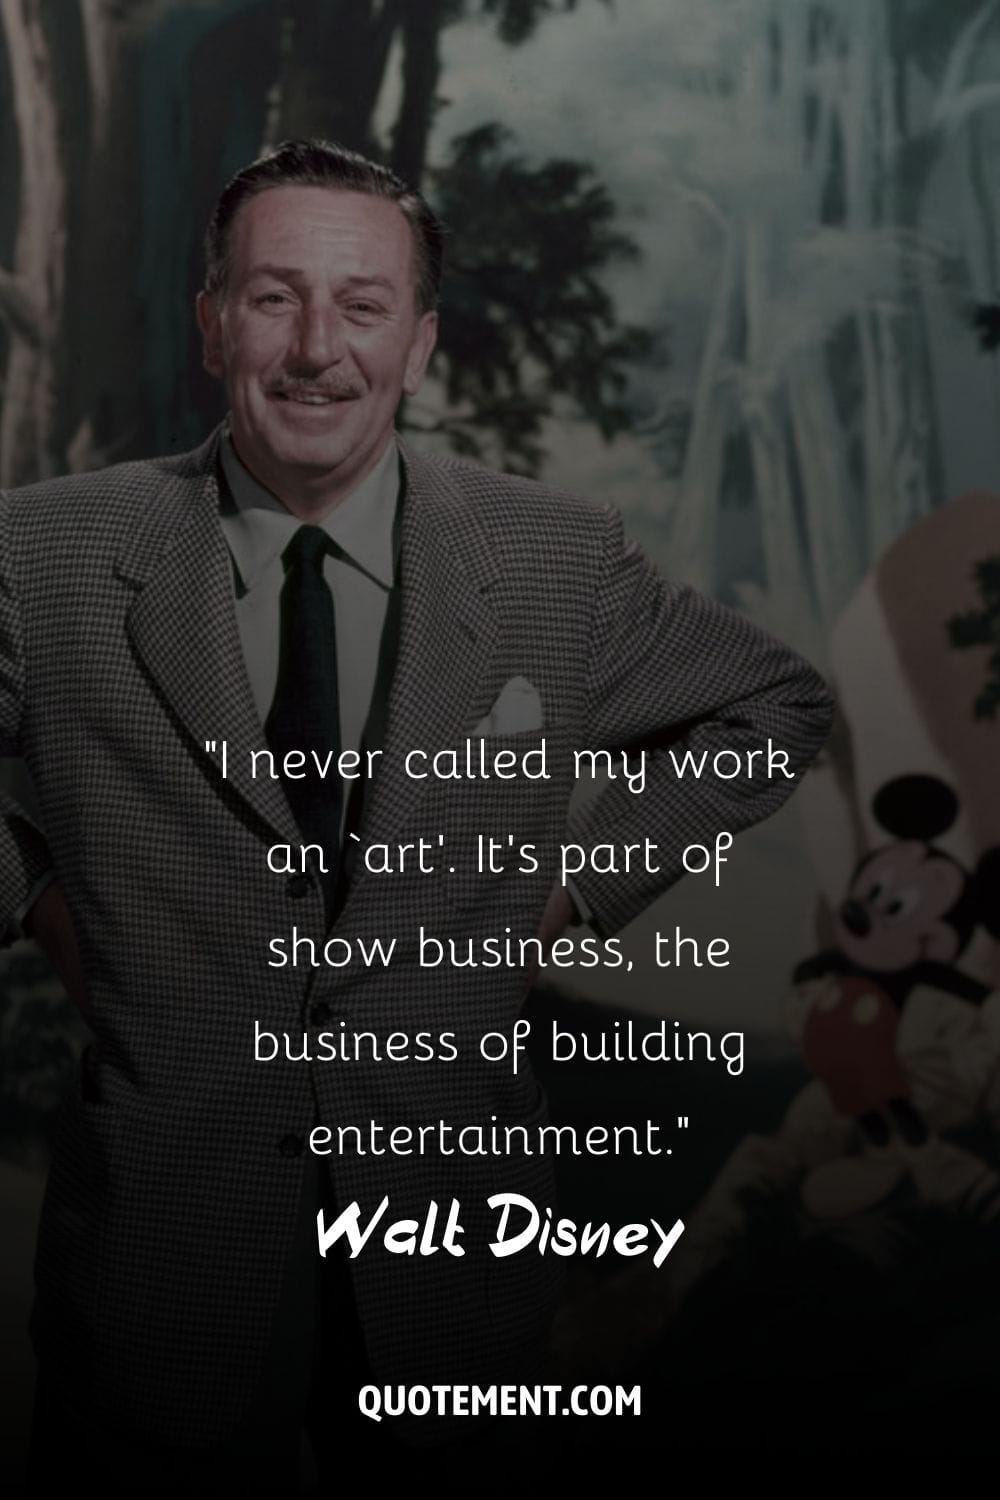 La radiante sonrisa de Walt Disney adorna el marco.